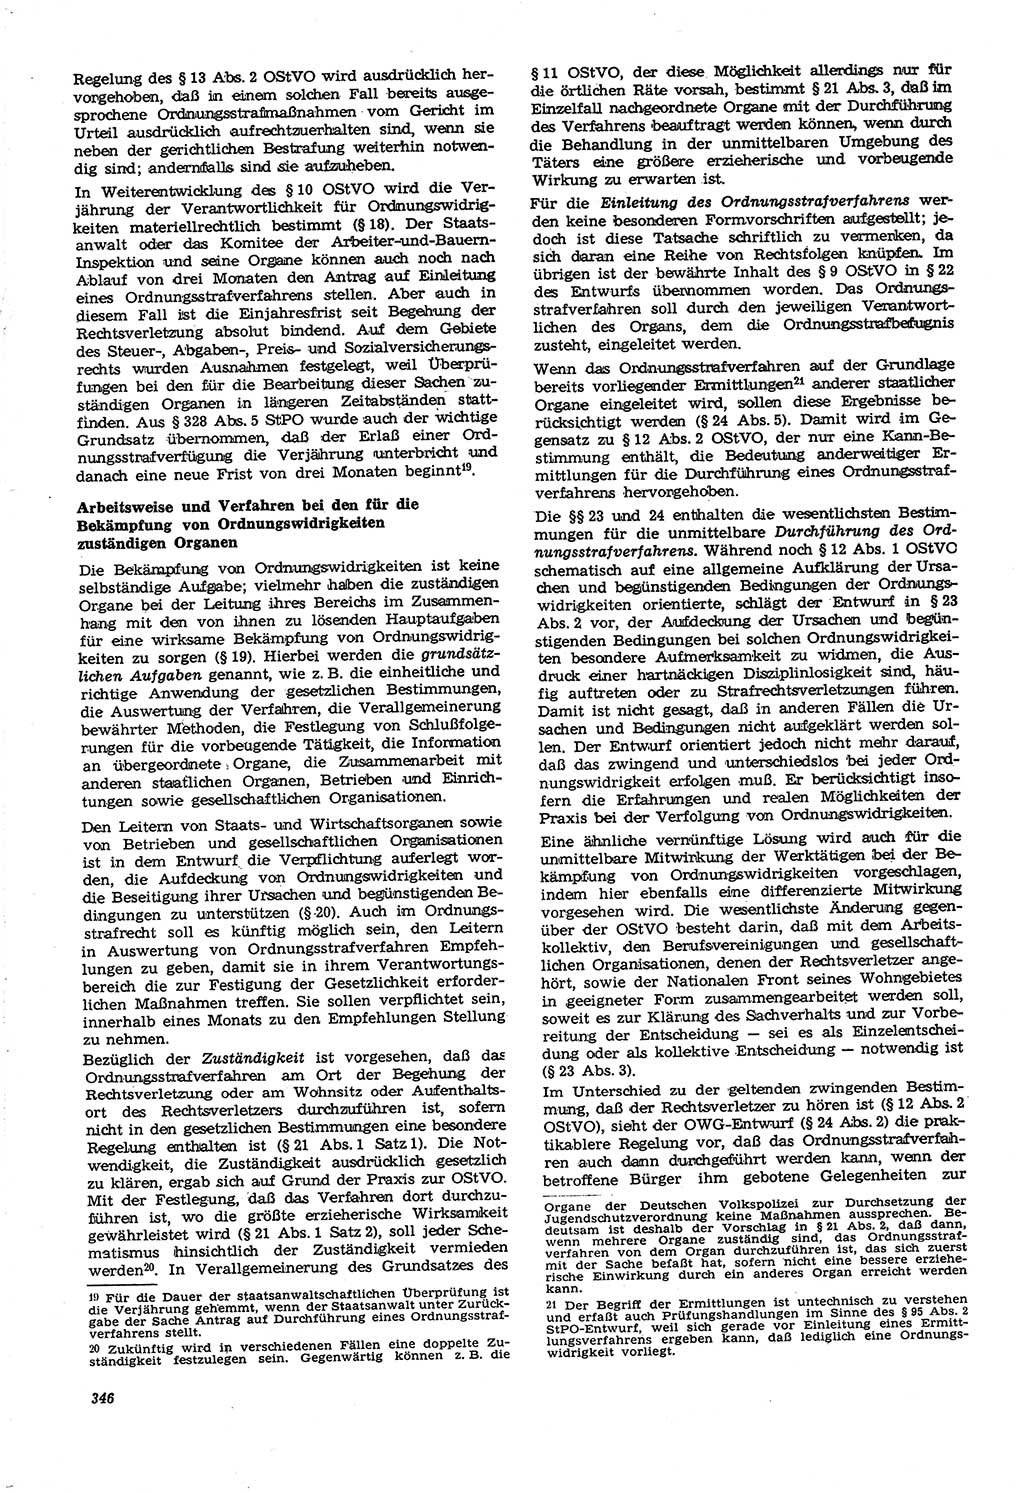 Neue Justiz (NJ), Zeitschrift für Recht und Rechtswissenschaft [Deutsche Demokratische Republik (DDR)], 21. Jahrgang 1967, Seite 346 (NJ DDR 1967, S. 346)